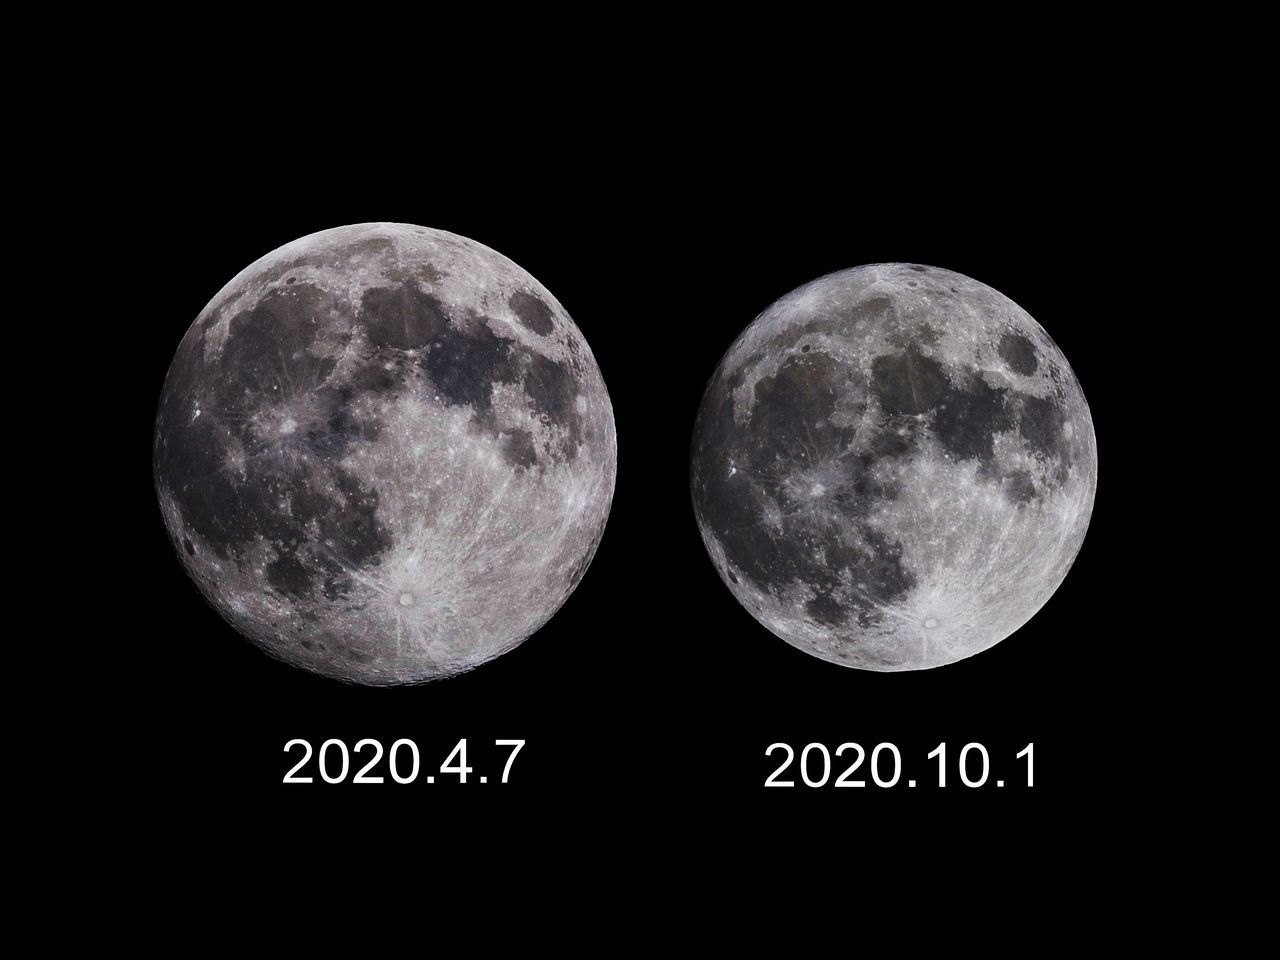 月の大きさ比較2020年 右が小さい